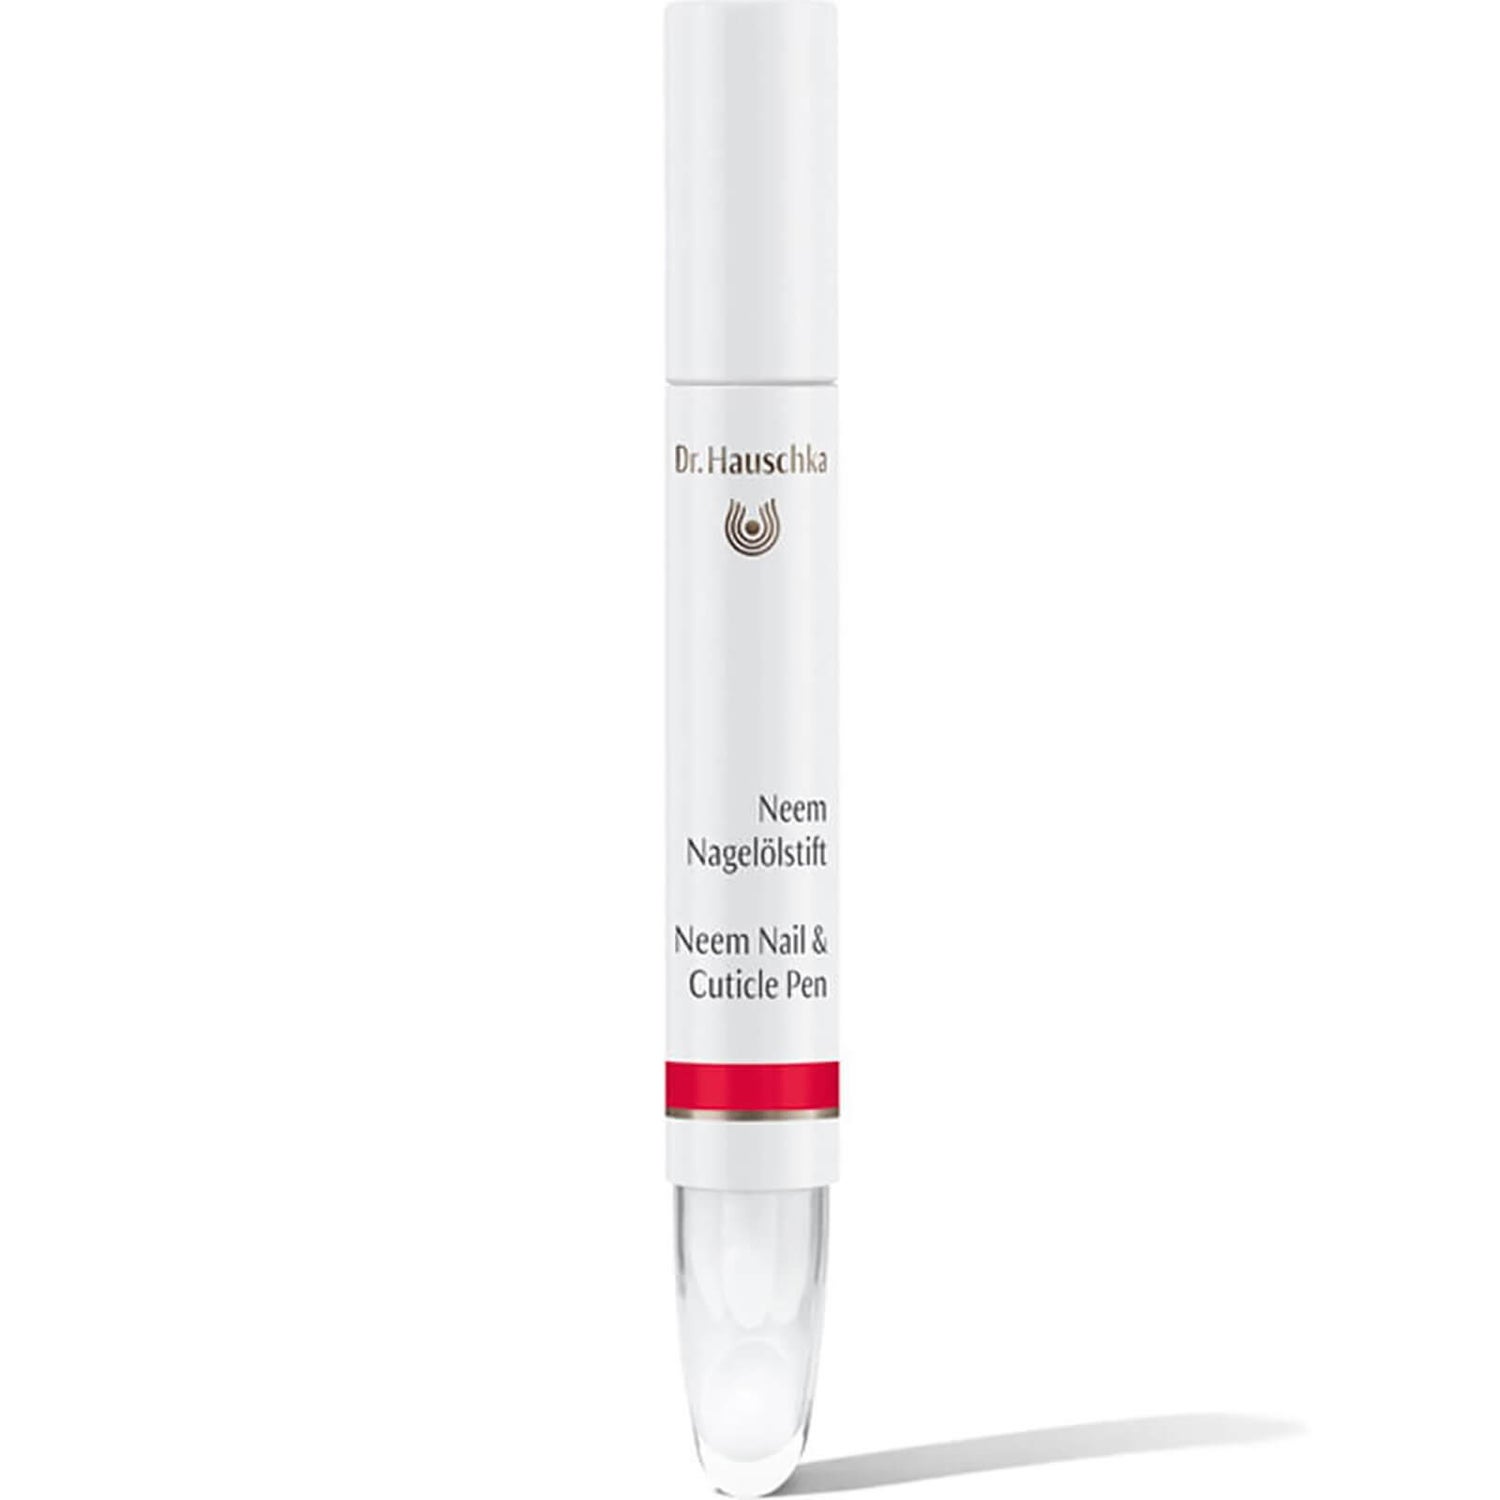 Tratamiento de neem y lápiz para cutículas de Dr. Hauschka (3 ml)